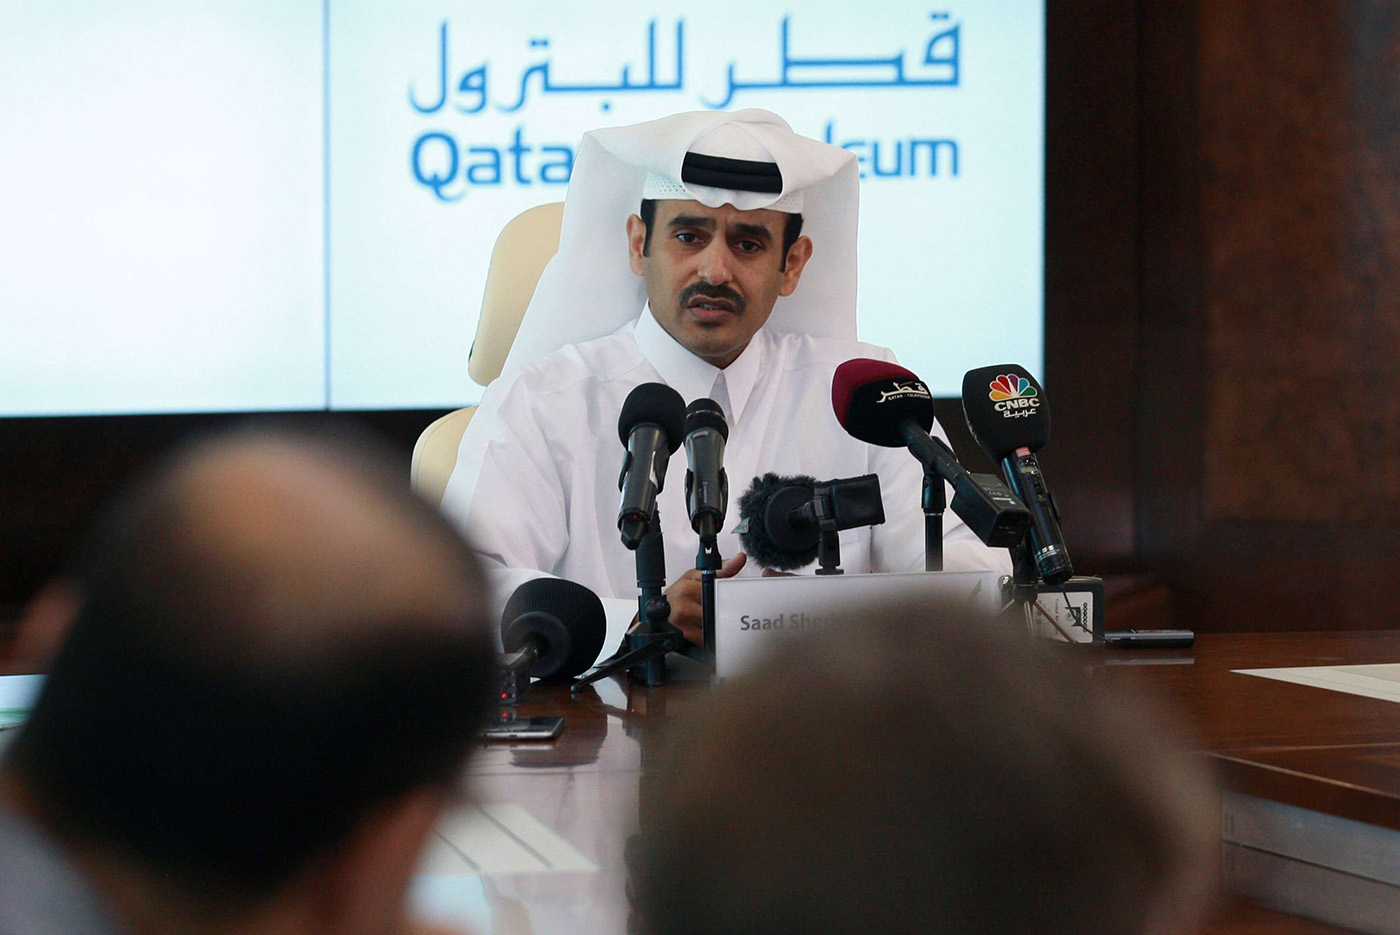 قطر للبترول تناشد المشترين بعد خسارة أكبر مصدر لغازها